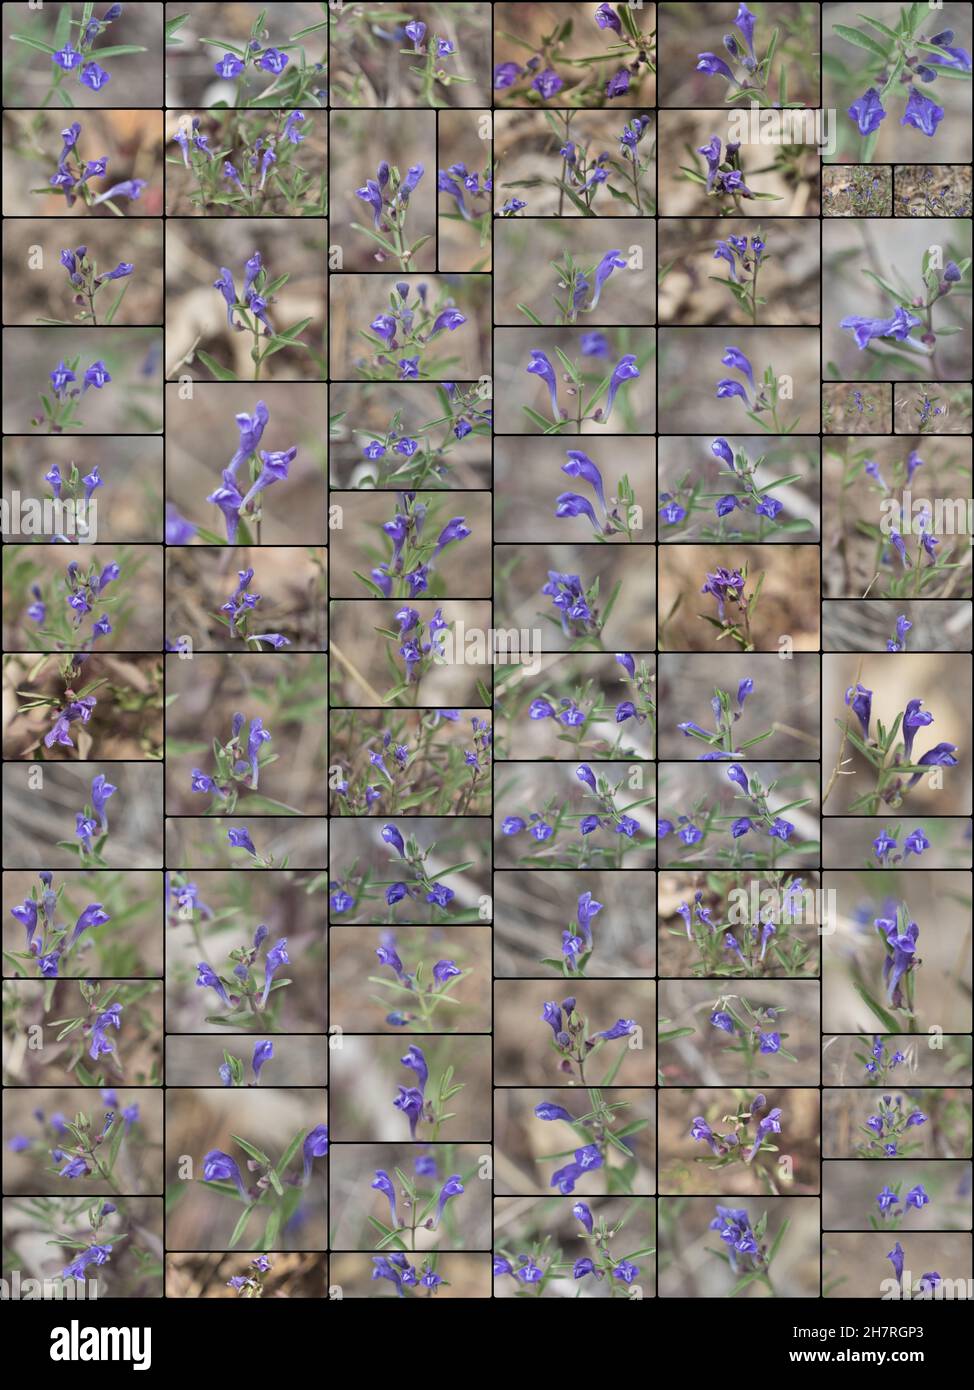 Purpurrote Blütenrasen von Greyleaf Bantambell, Scutellaria Siphocampyloides, Lamiaceae, einheimischem Kraut in den San Bernardino Mountains, Frühling. Stockfoto